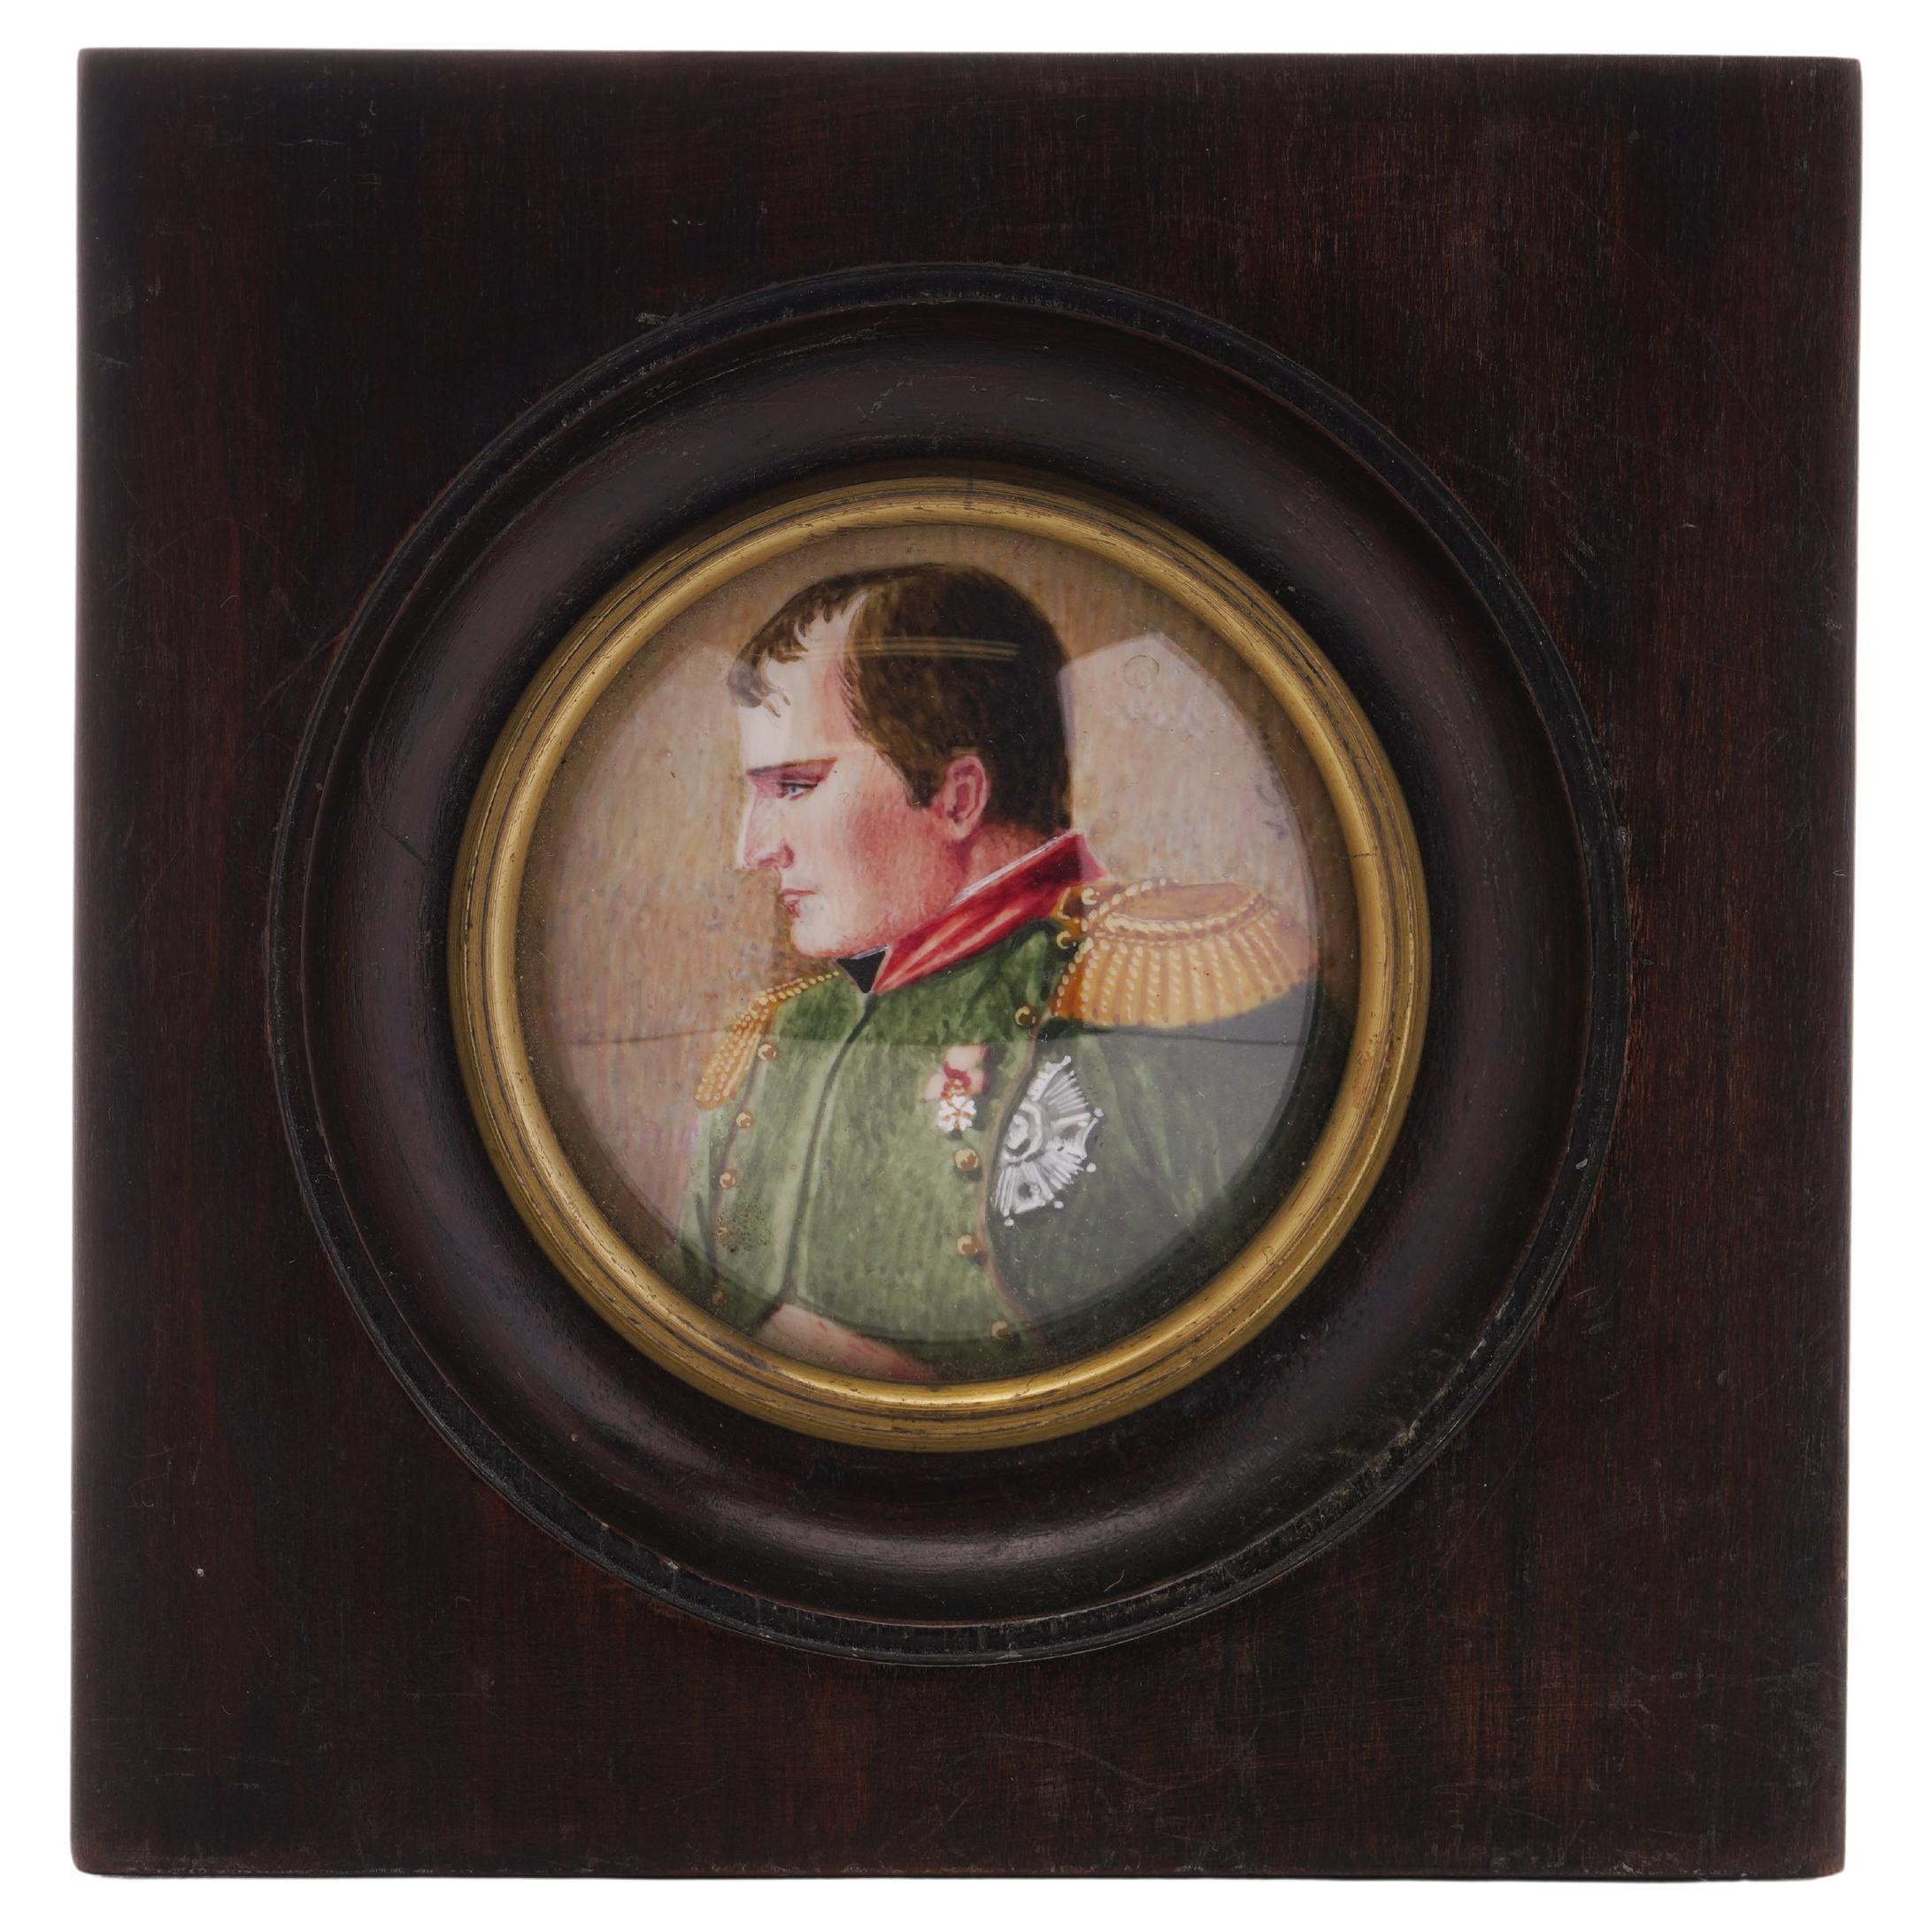 Portrait miniature de Napoléon Ier peint à la main à l'aquarelle au XIXe siècle 